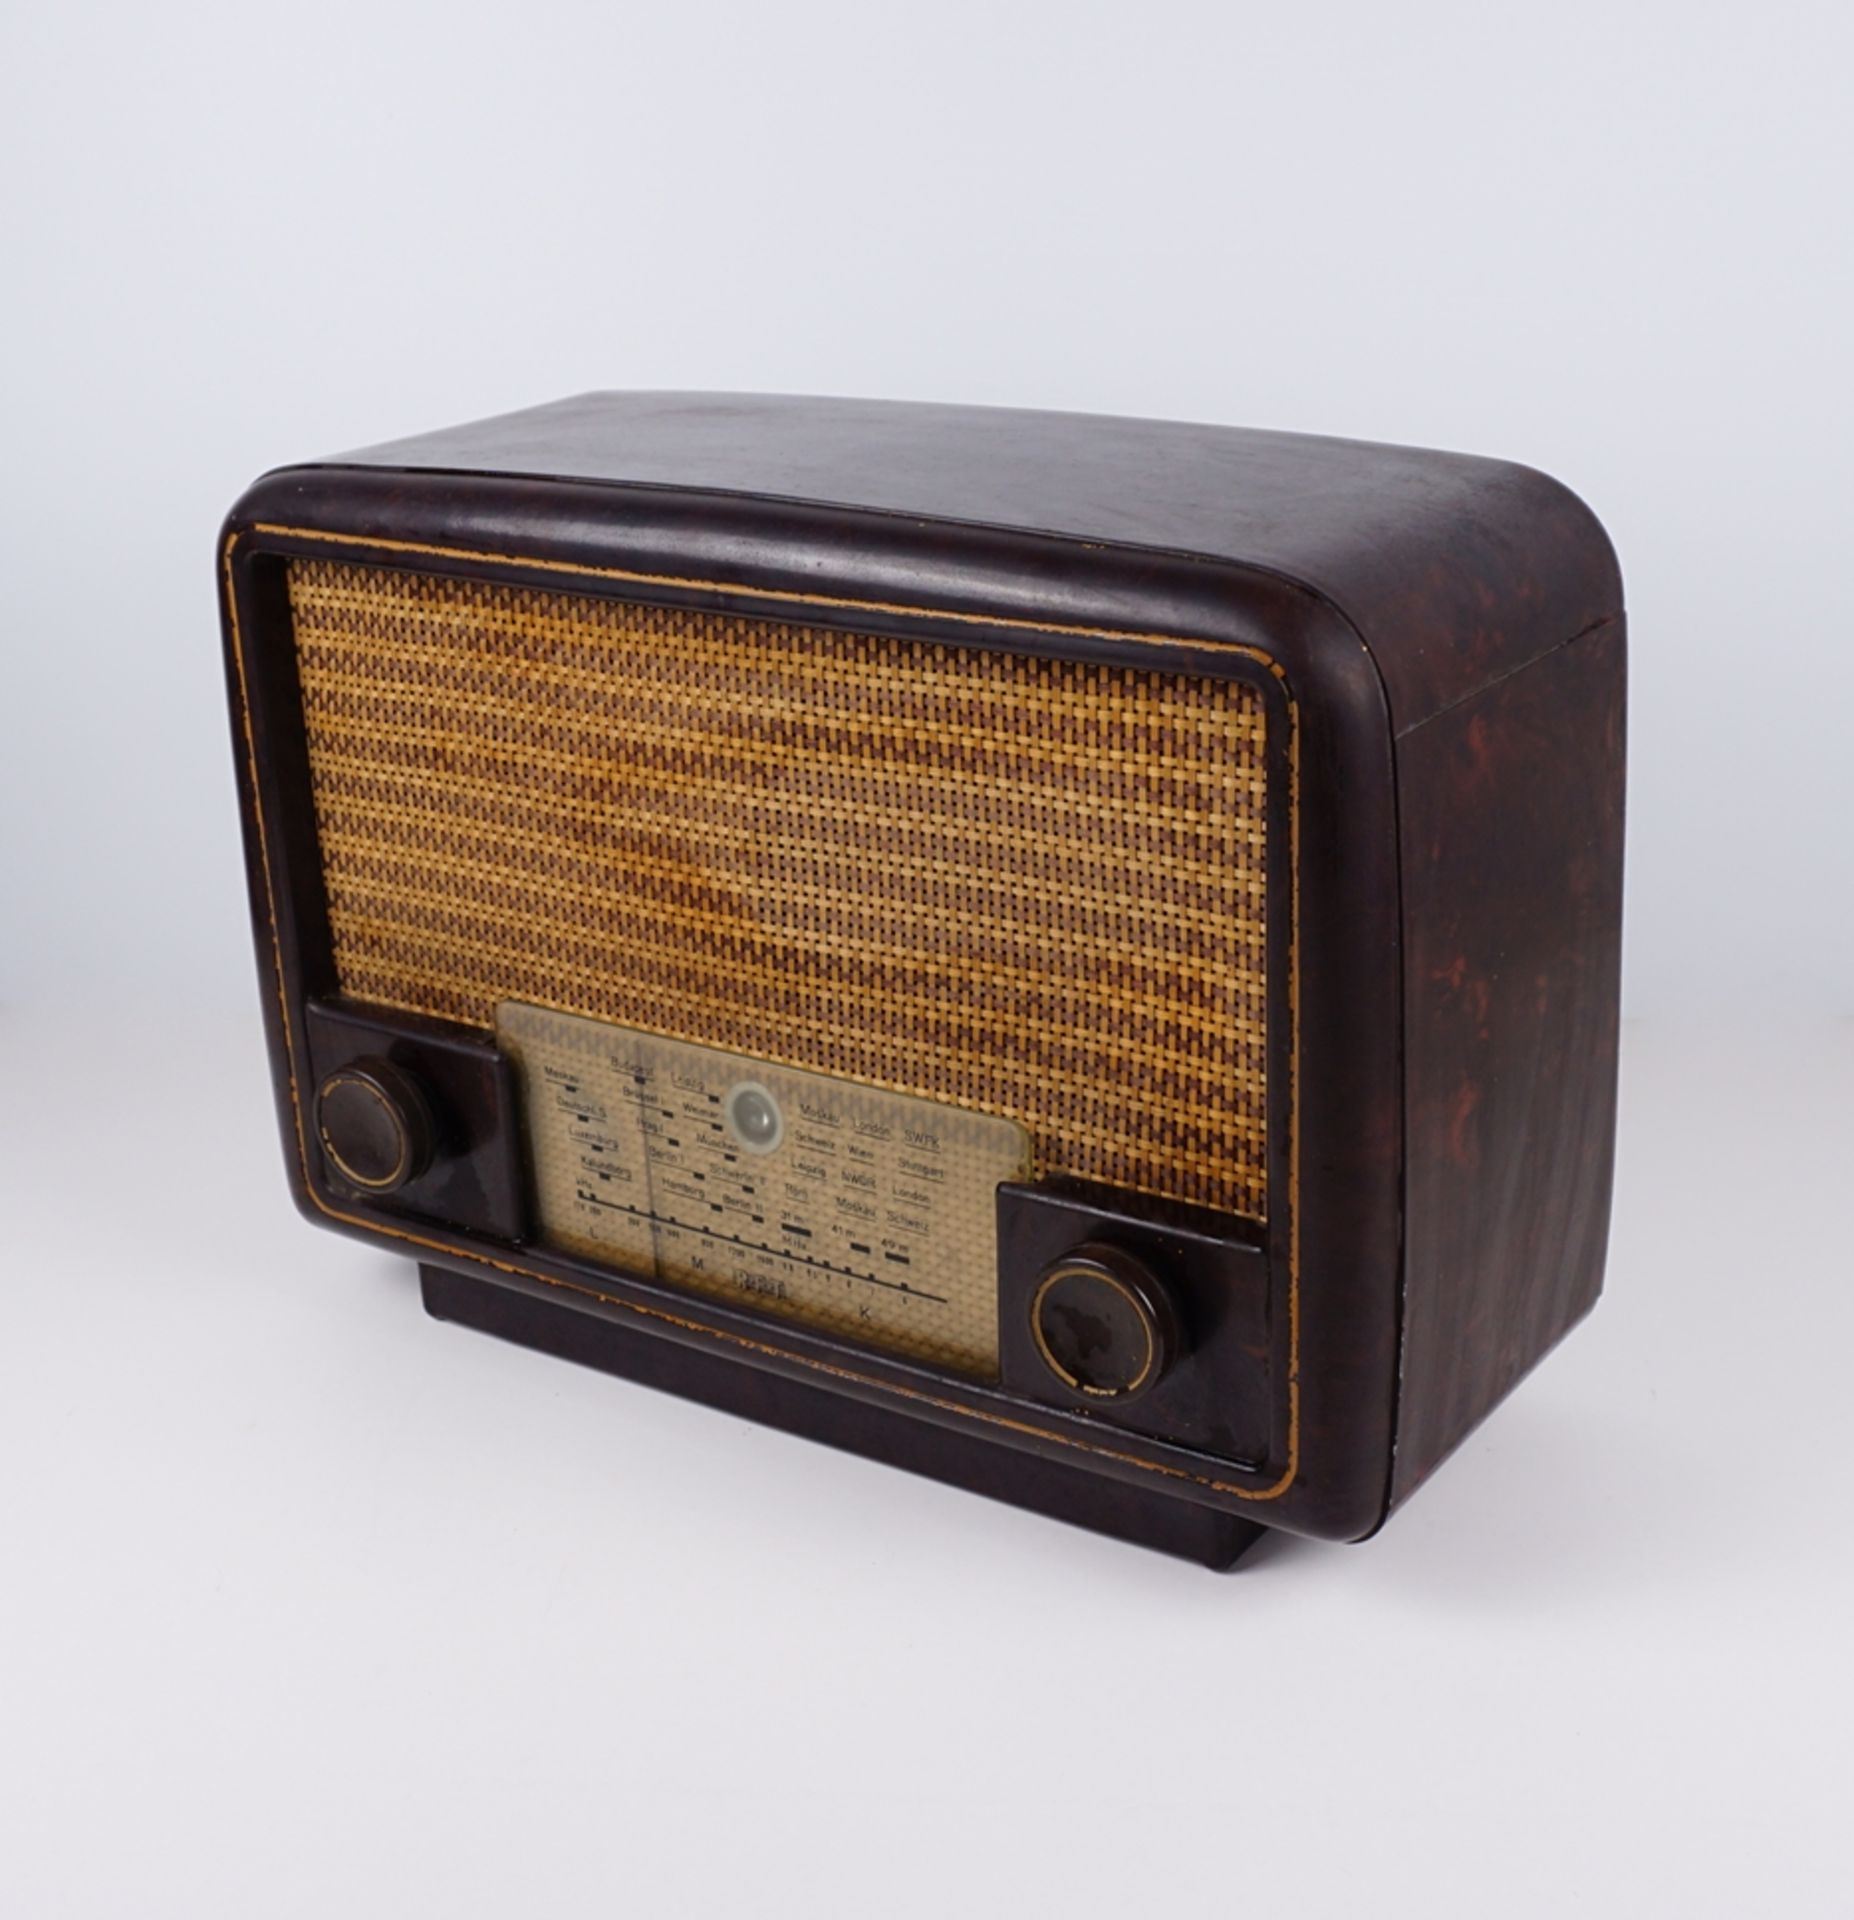 RFT-Einkreisempfänger, Typ 1U11, RFT-Stern-Radio Berlin, 1951-1954 - Image 2 of 3